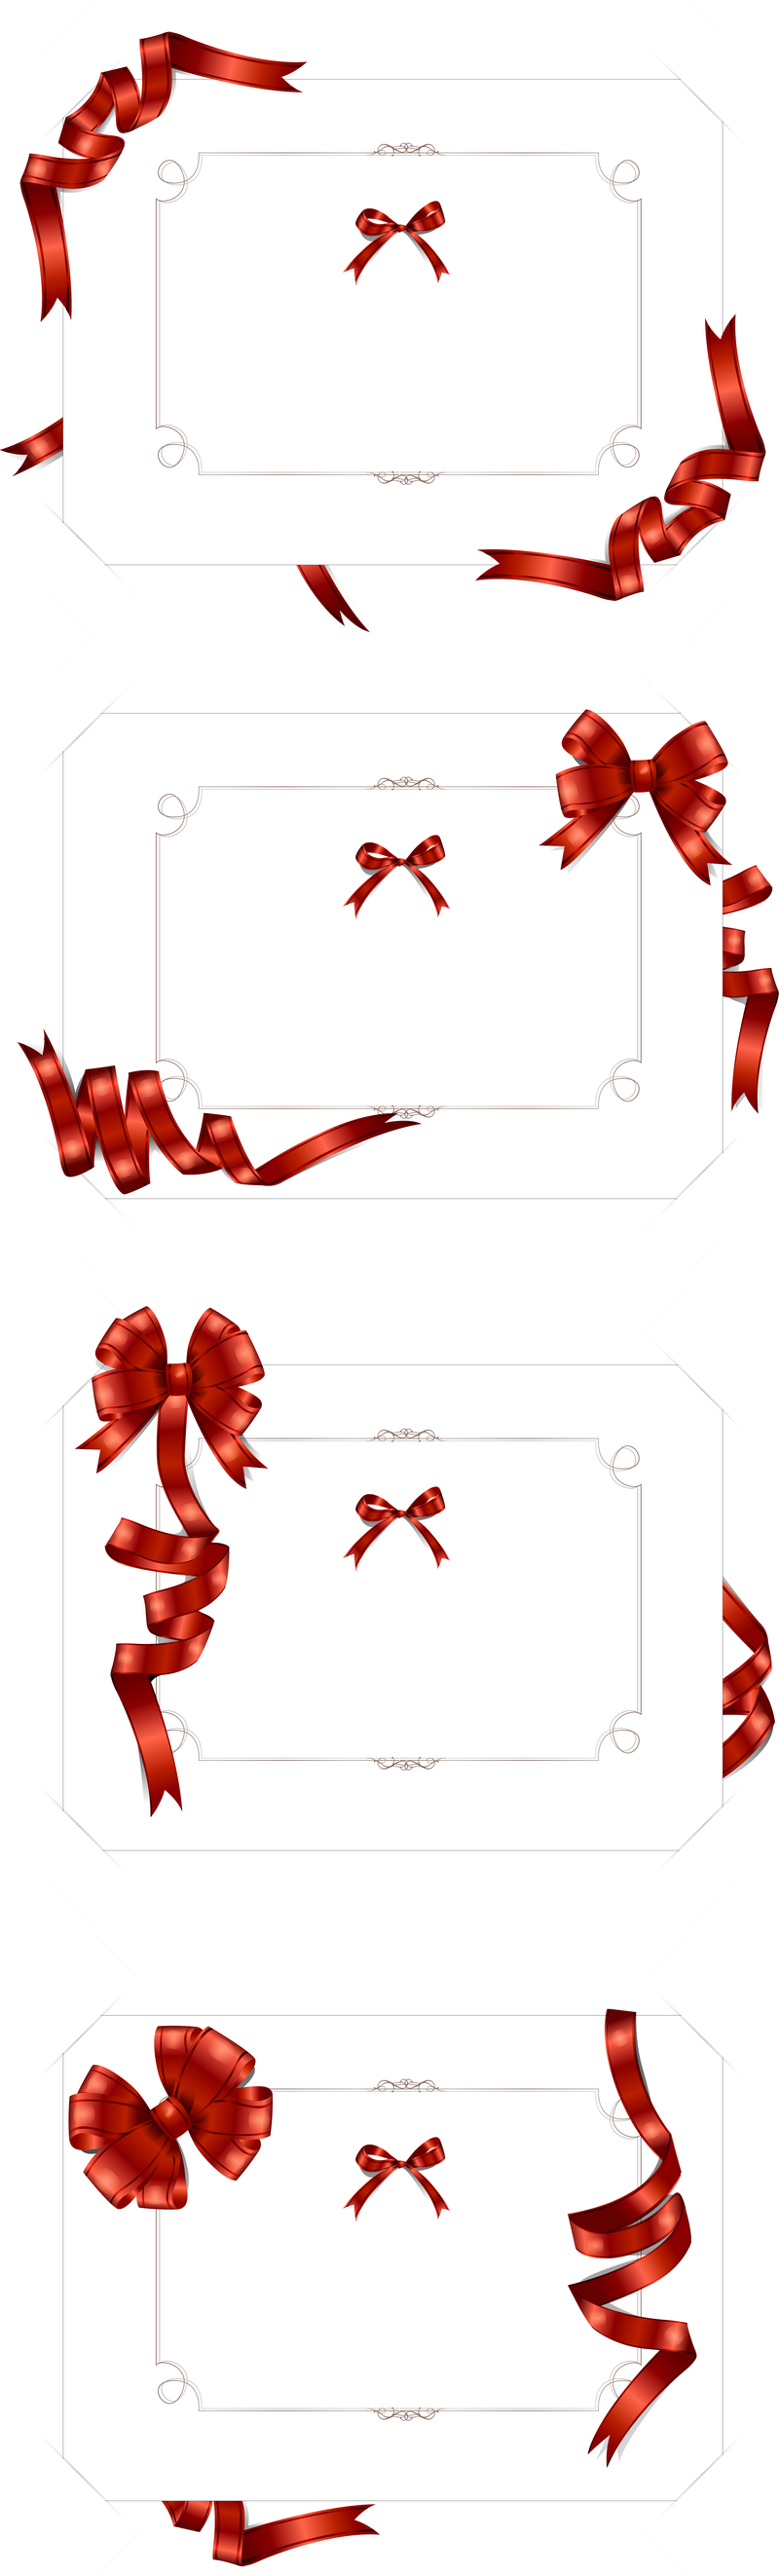 4 cinta sinuosa del vector de tarjeta en blanco